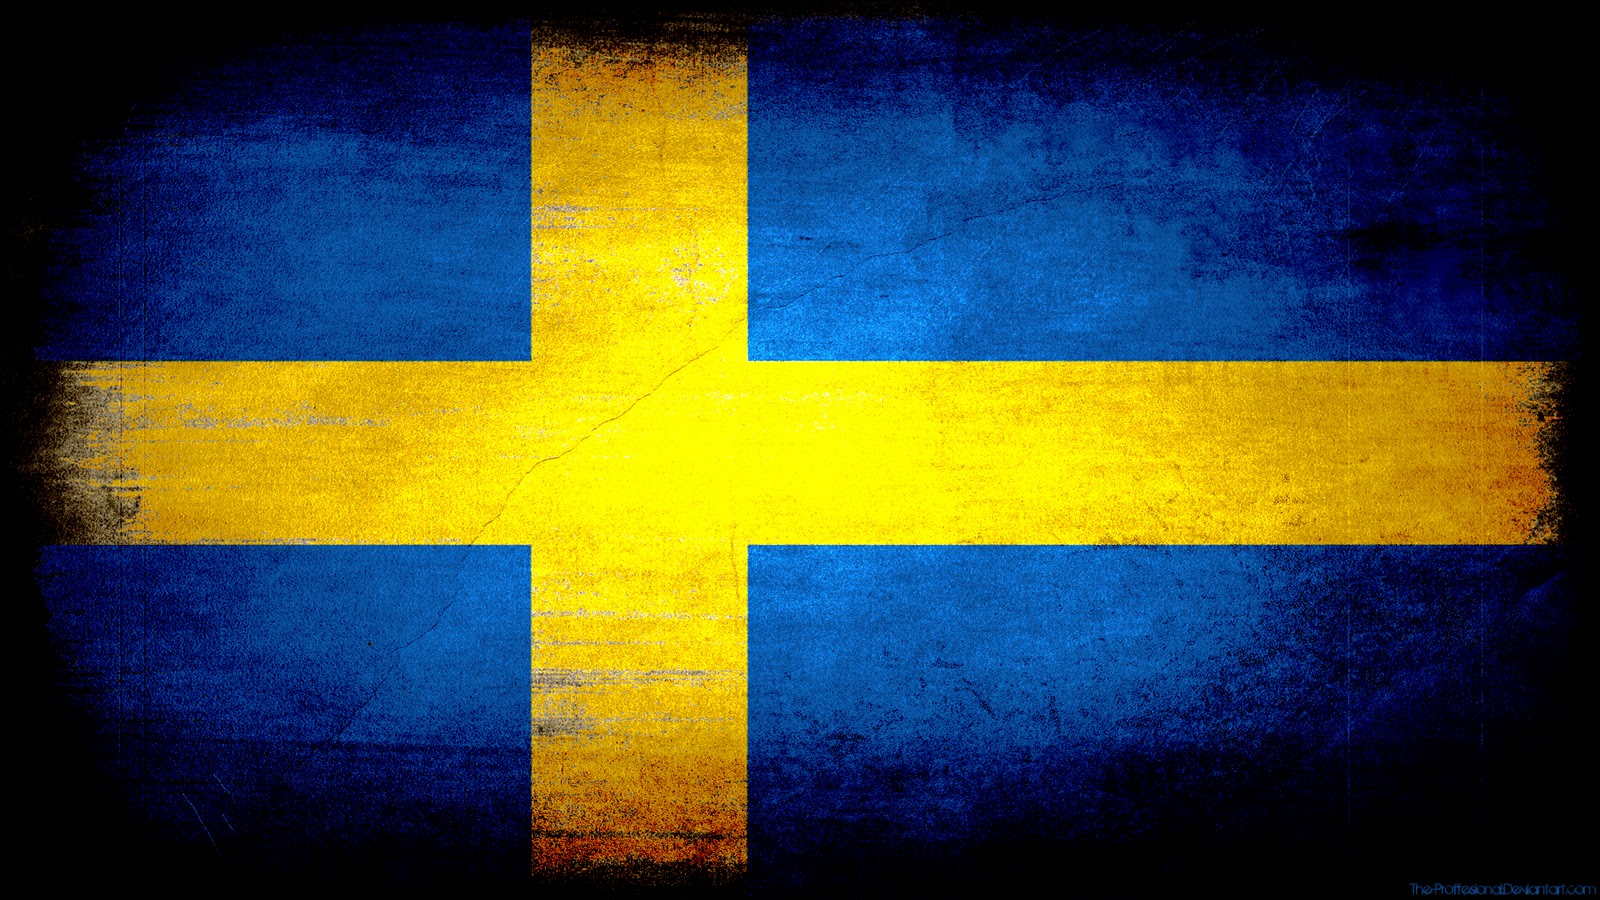 http://1.bp.blogspot.com/-j-ACwwZVQl4/TwtphzwzPMI/AAAAAAAABHo/_-E9712iwSg/s1600/Sweden_flag_grunge_wallpaper_by_The_proffesional.jpg